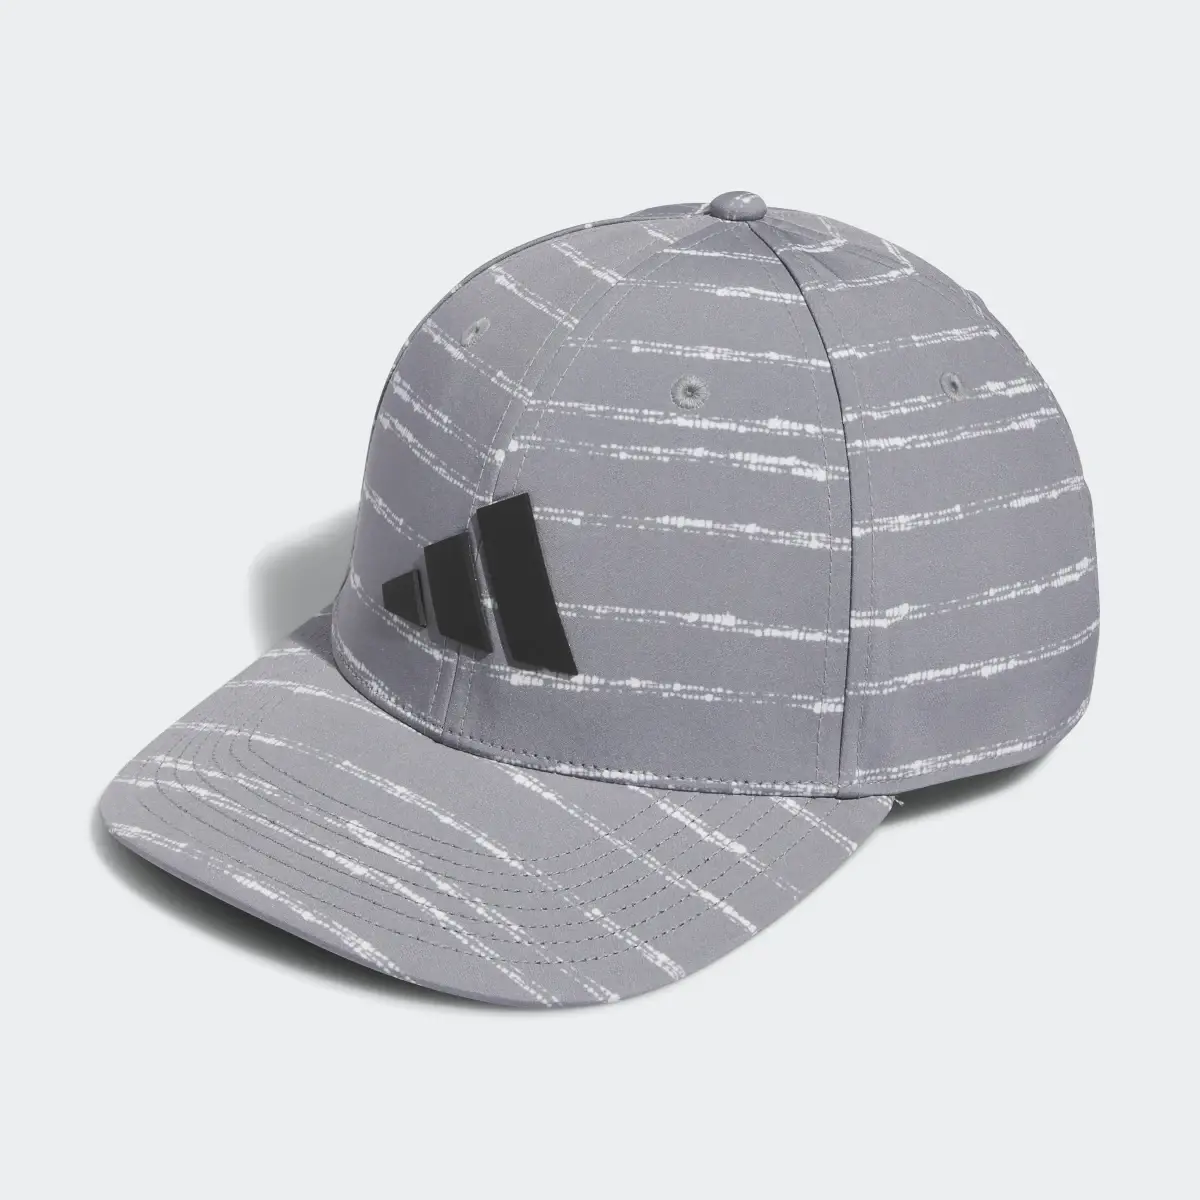 Adidas Printed Tour Hat. 2